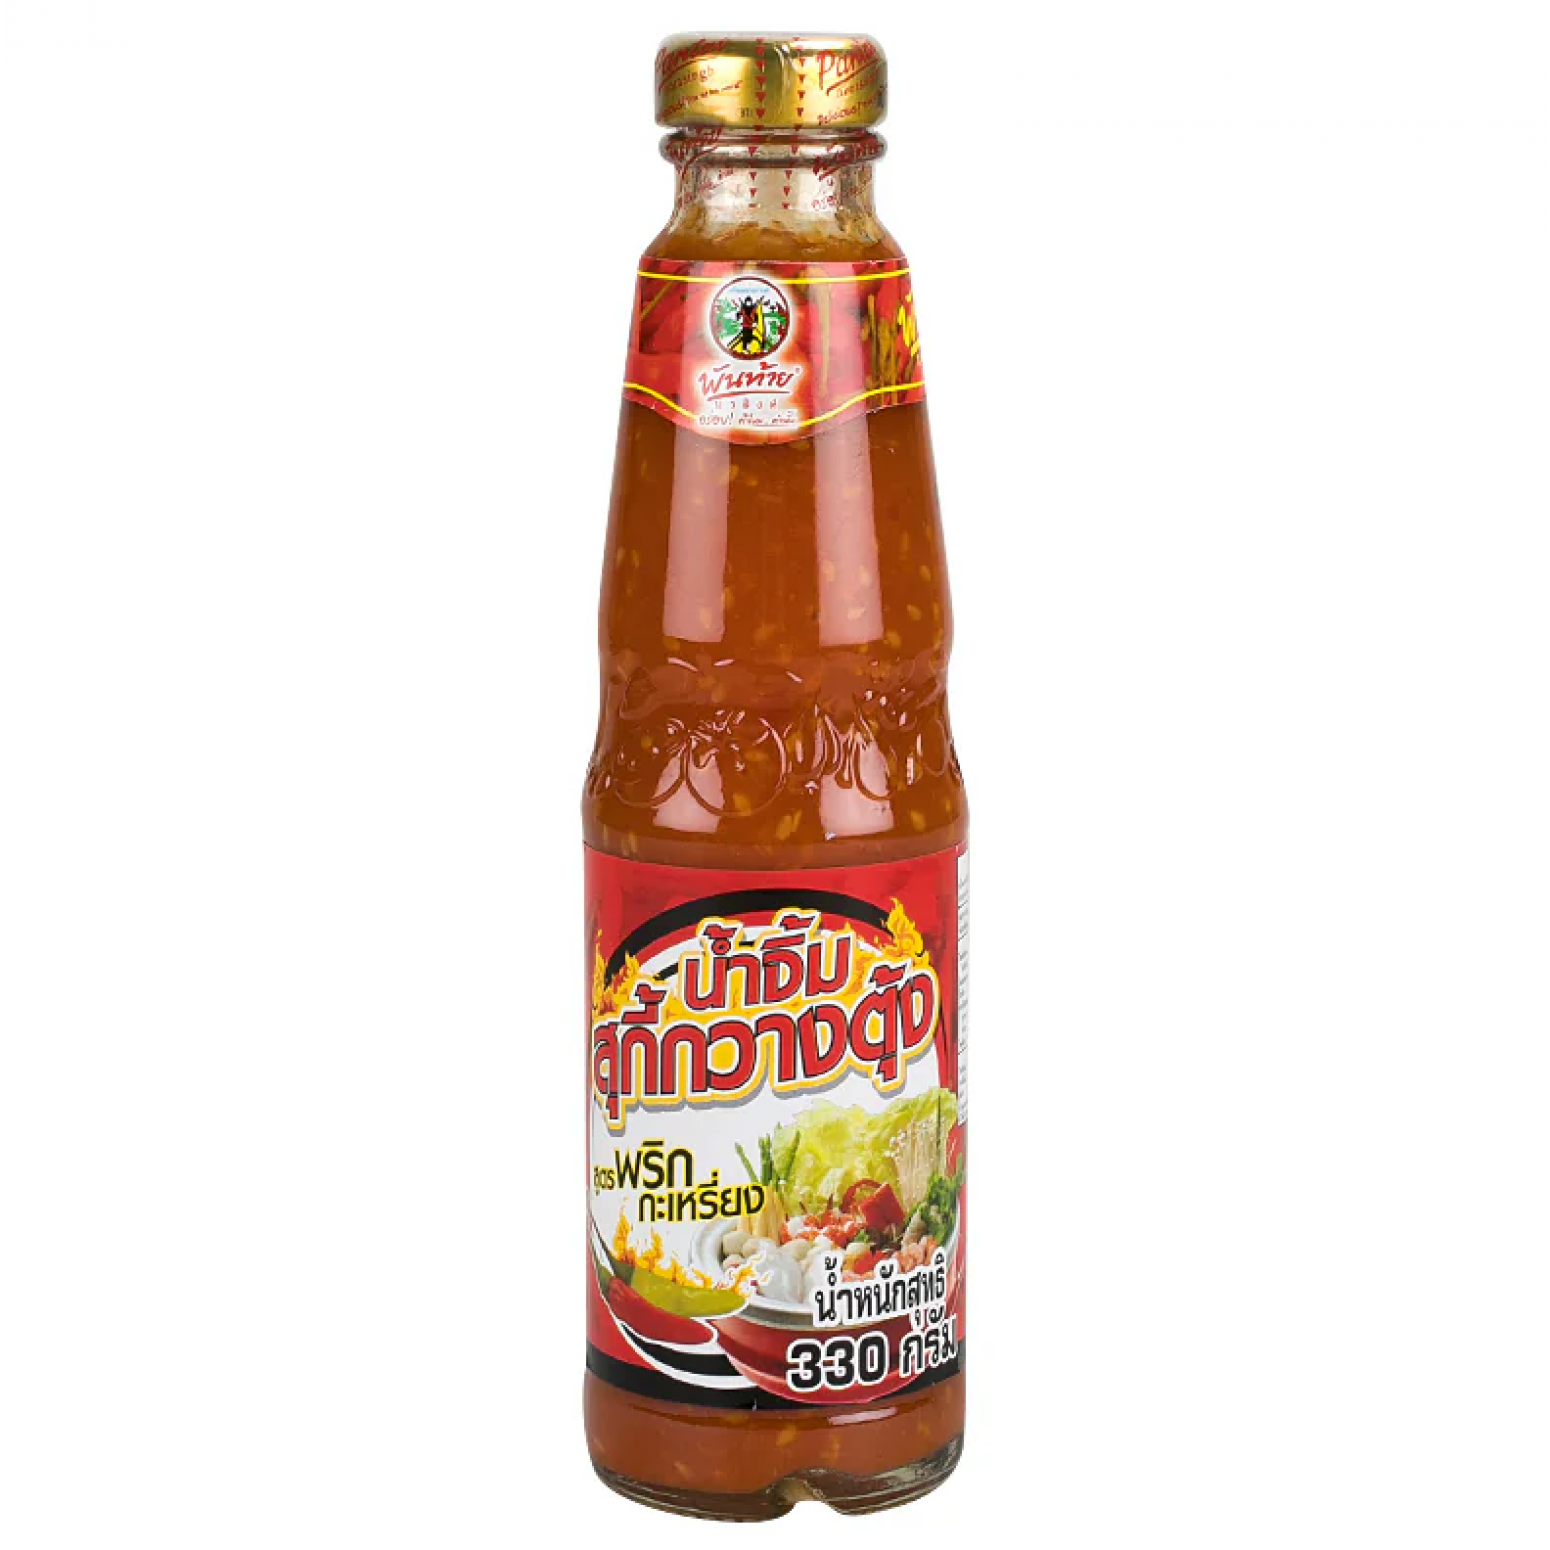 Pantainorasingh Cantonese Suki Sauce Extra Hot 330g.